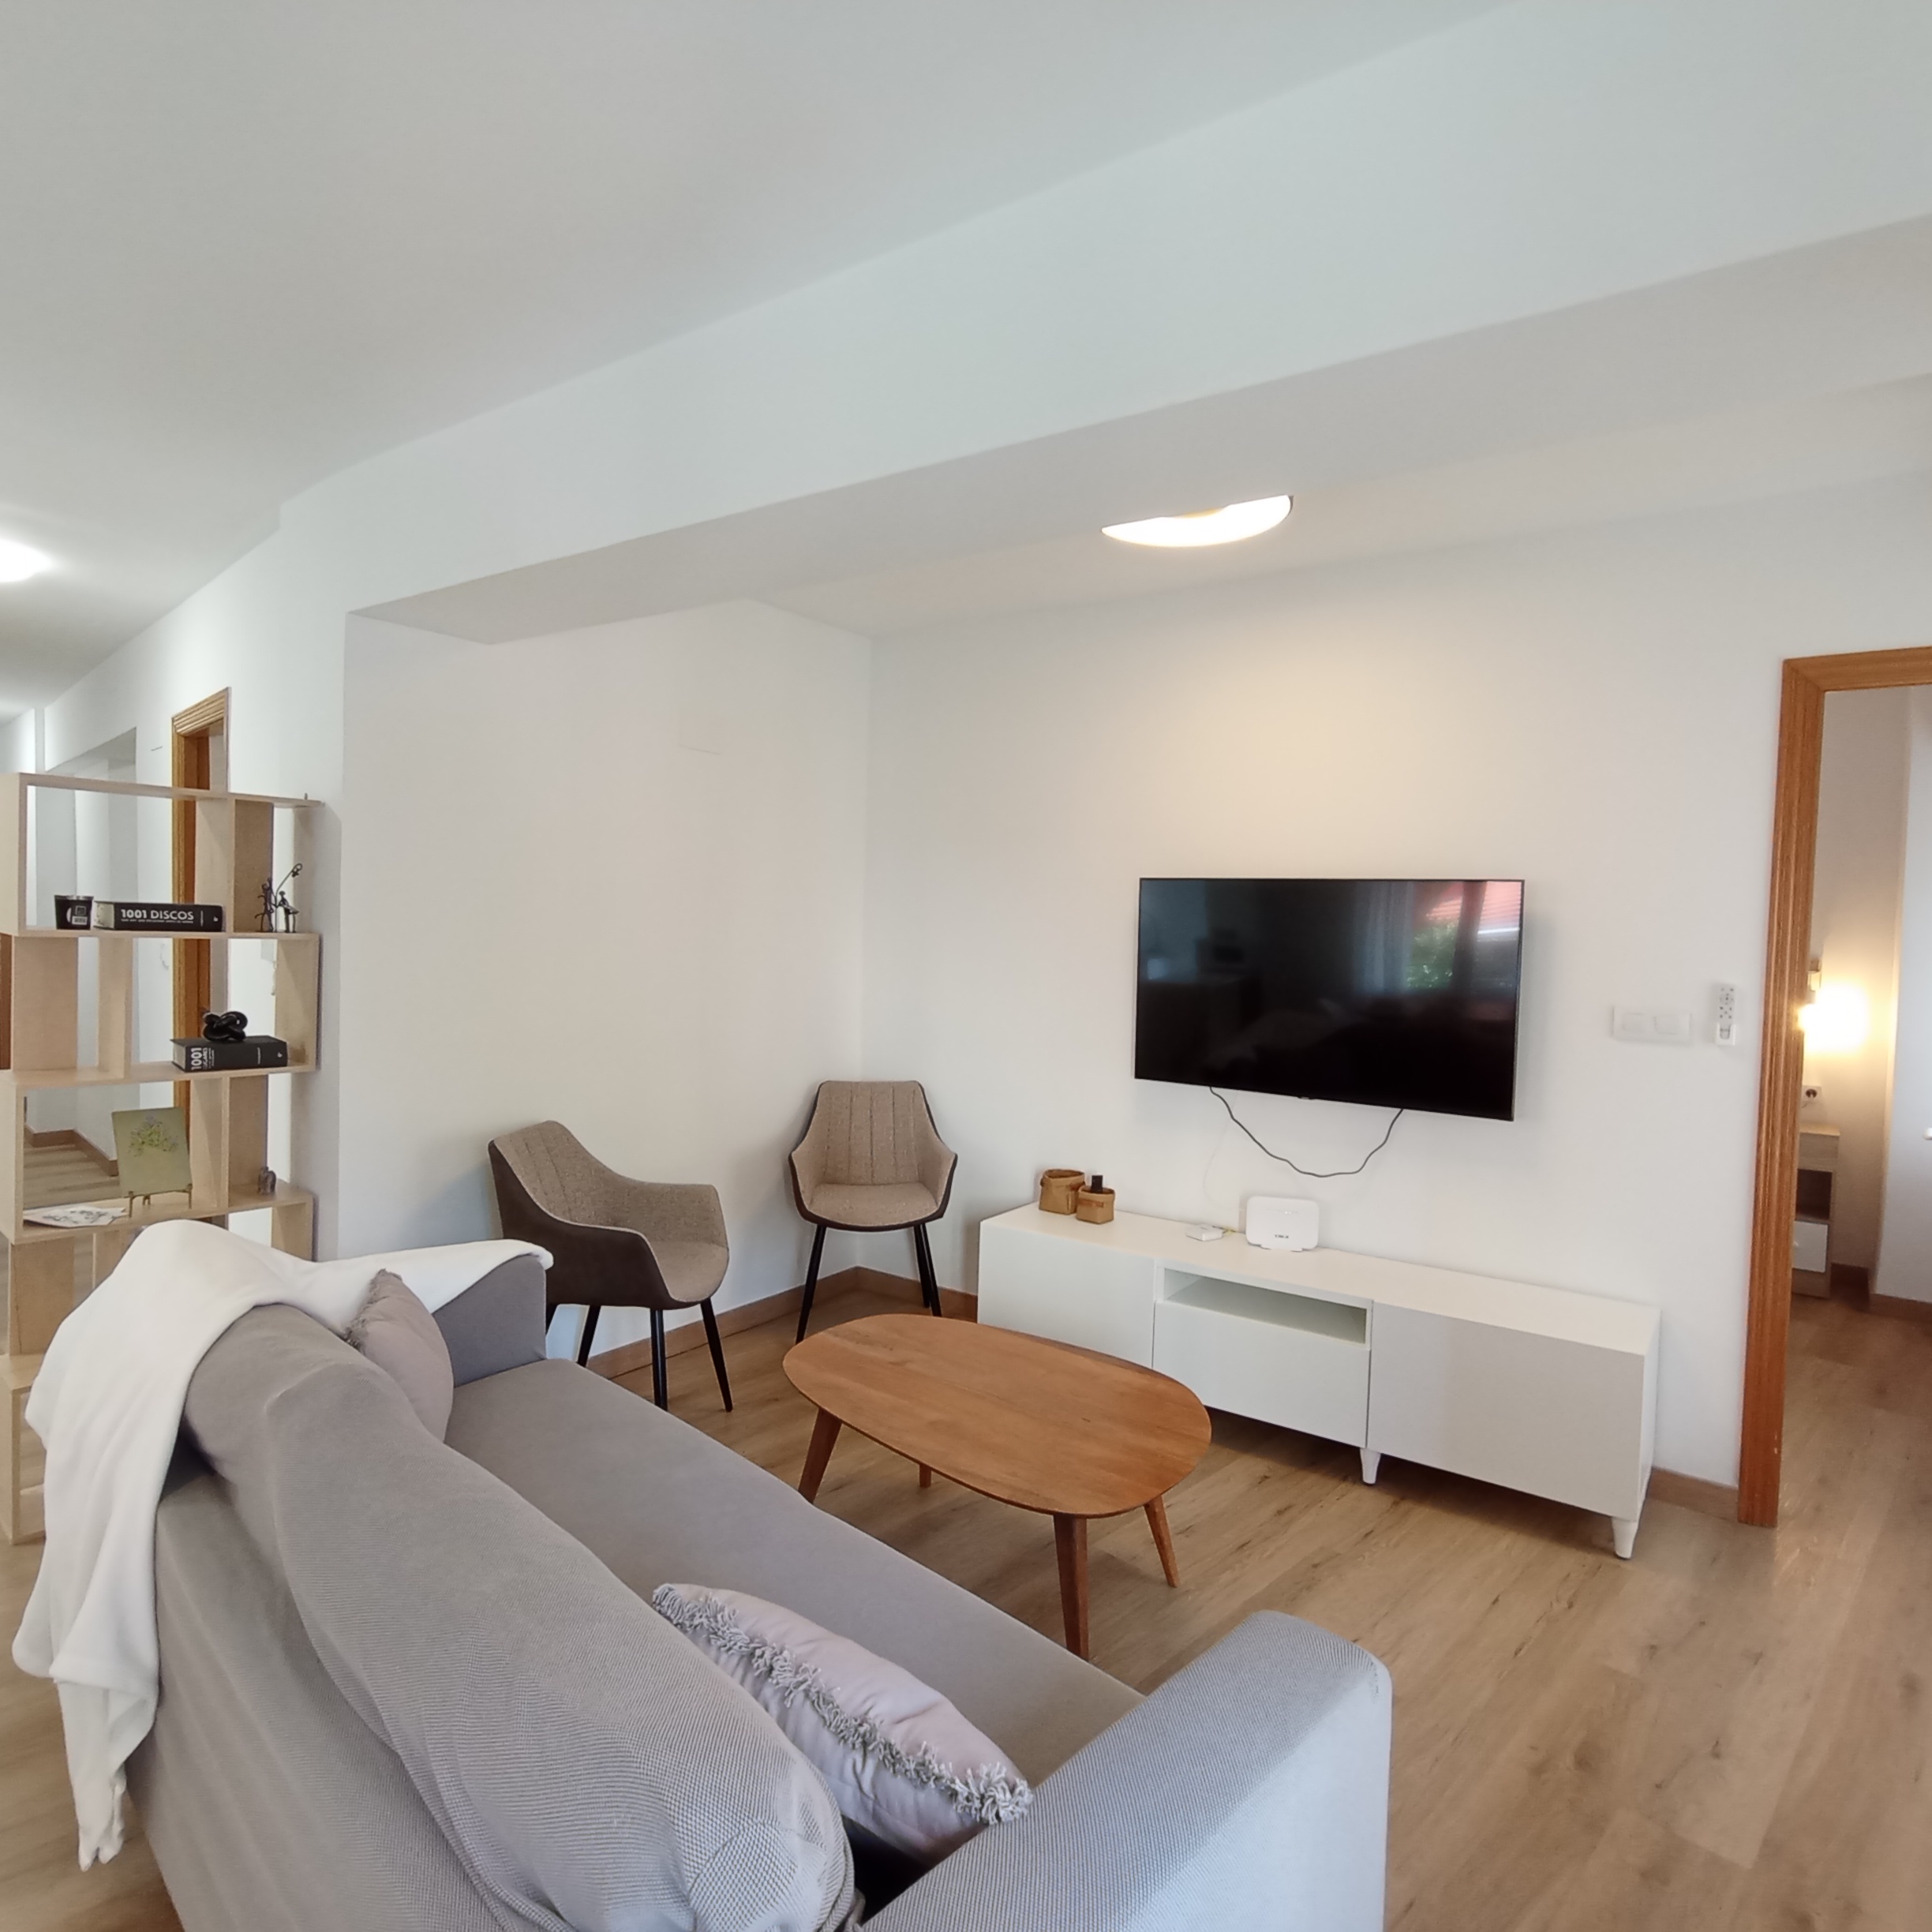 Trafalgar - 3 Bedroom apartment for rent in Valencia living room 3